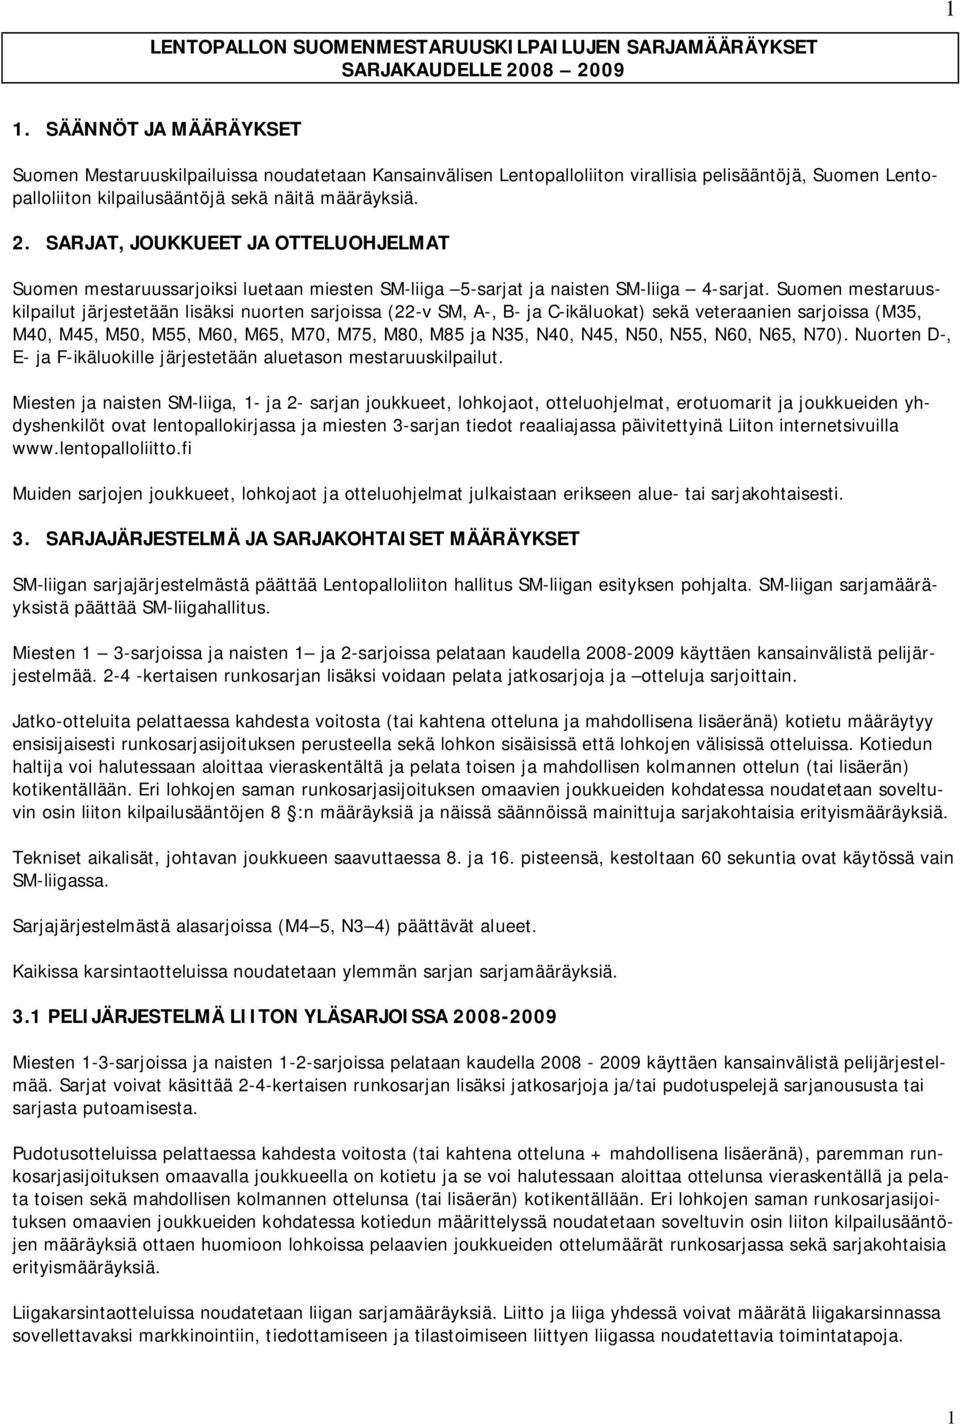 SARJAT, JOUKKUEET JA OTTELUOHJELMAT Suomen mestaruussarjoiksi luetaan miesten SM-liiga 5-sarjat ja naisten SM-liiga 4-sarjat.